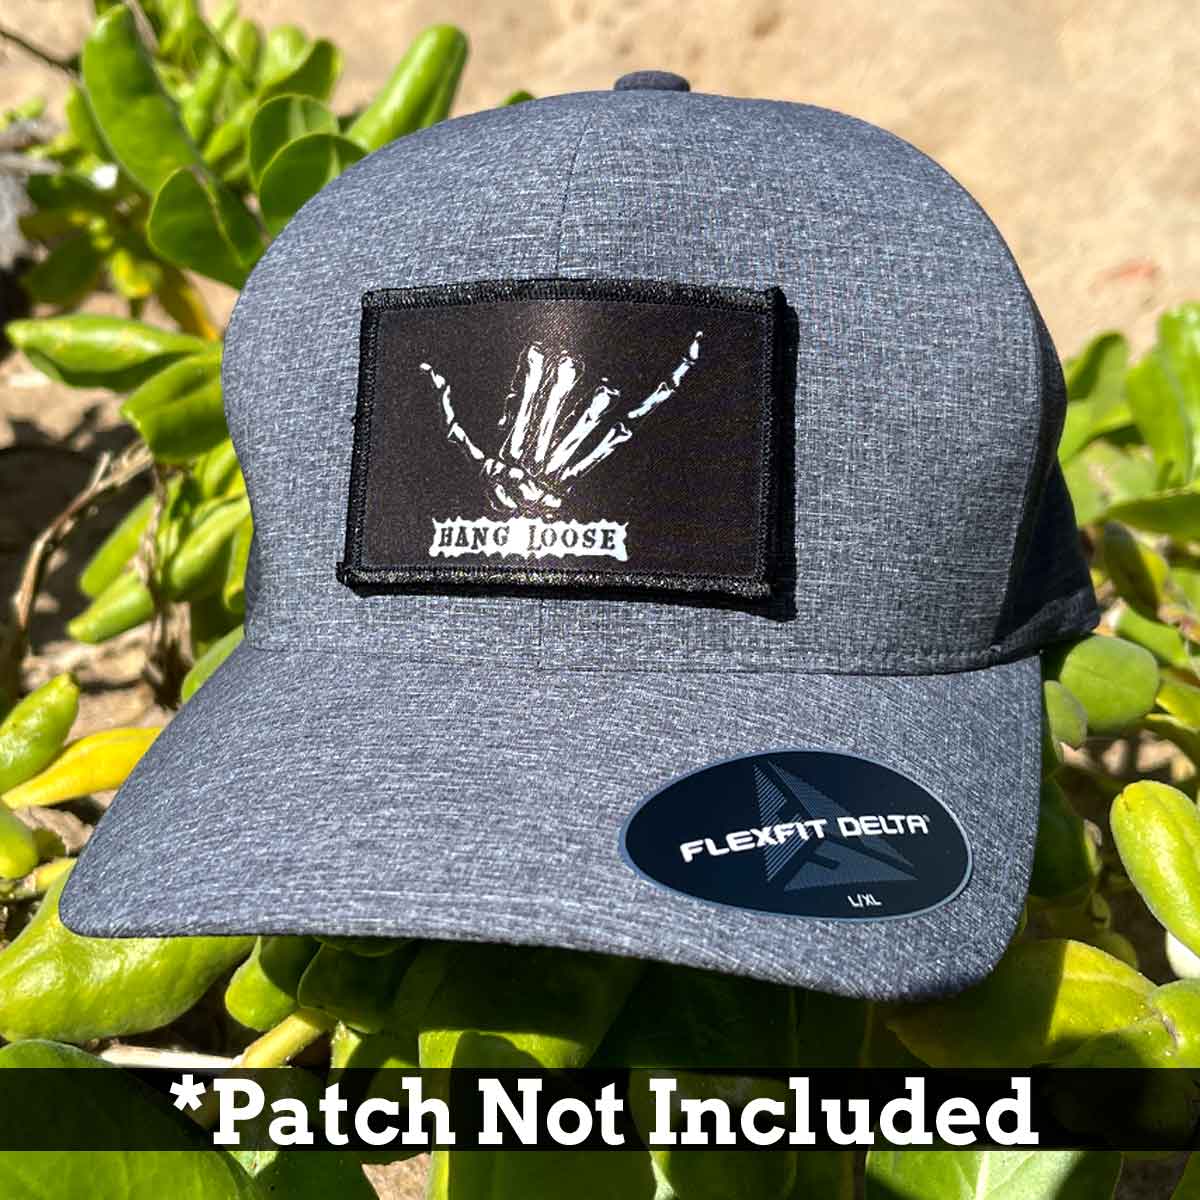 Black - Delta Premium Flexfit Hat by Pull Patch